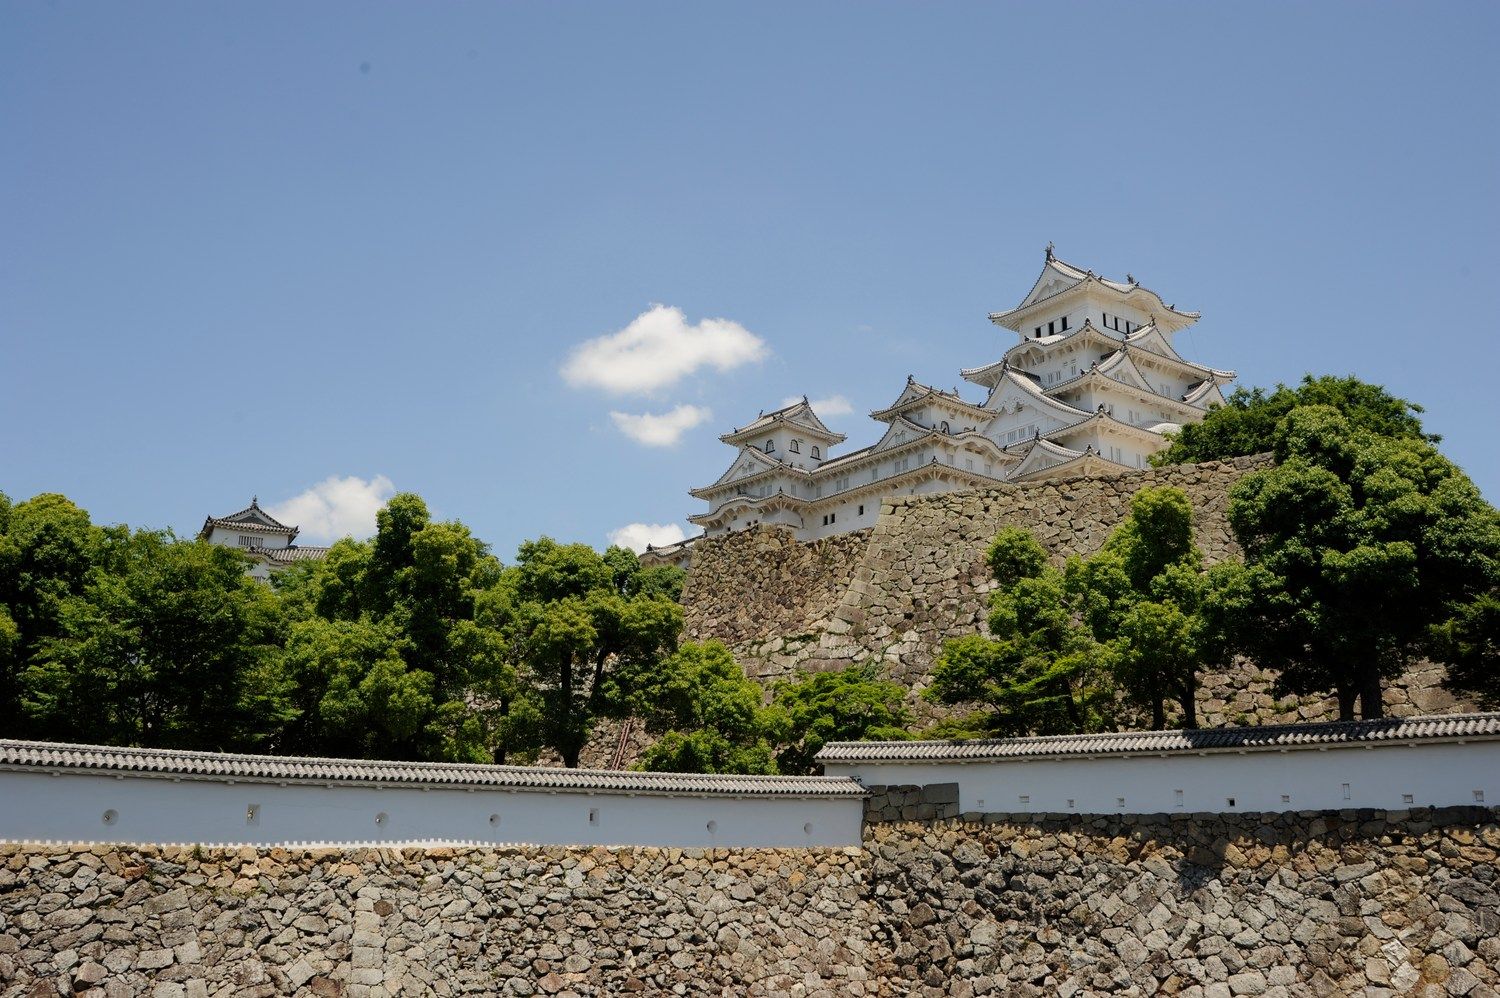 Au japon aussi, il y a des châteaux (et des poulpes géants qui chantent)